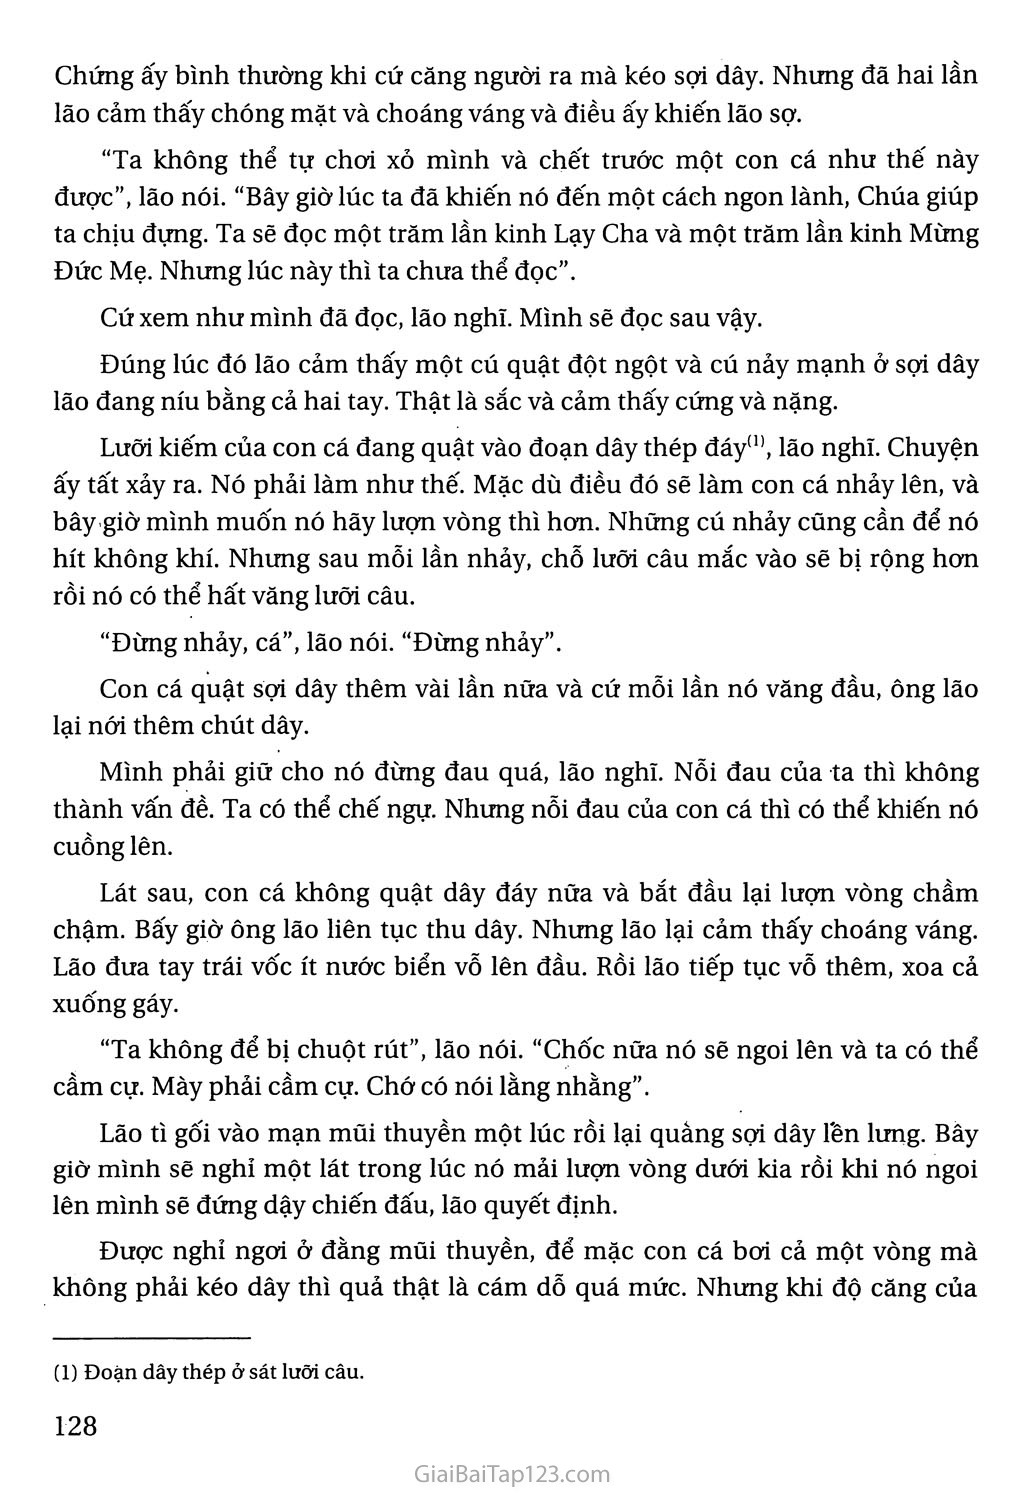 Ông già và biển cả (trích) trang 3